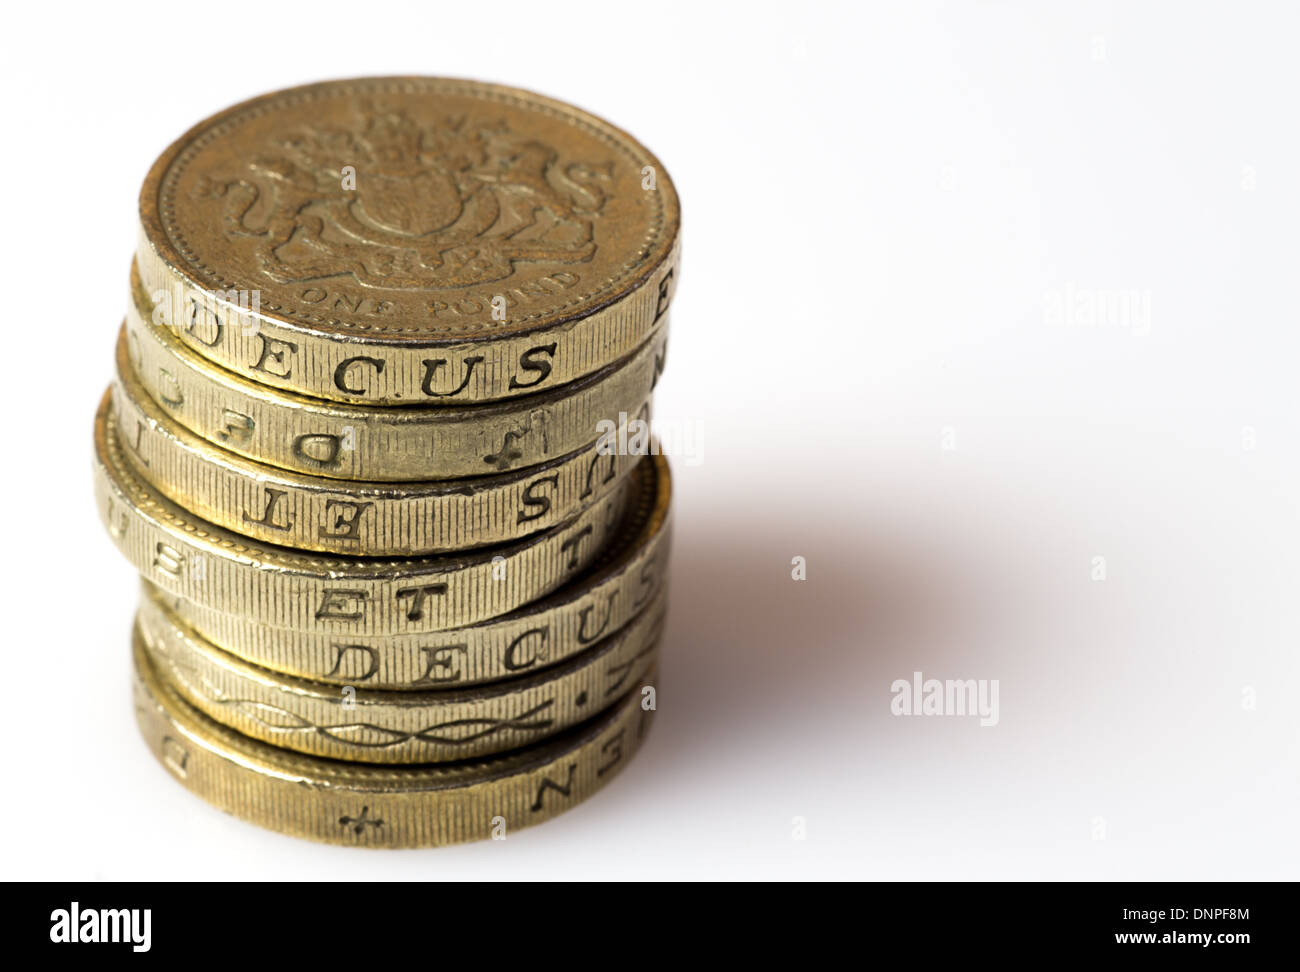 Haufen von einem britischen Pfund-Münzen Stockfoto